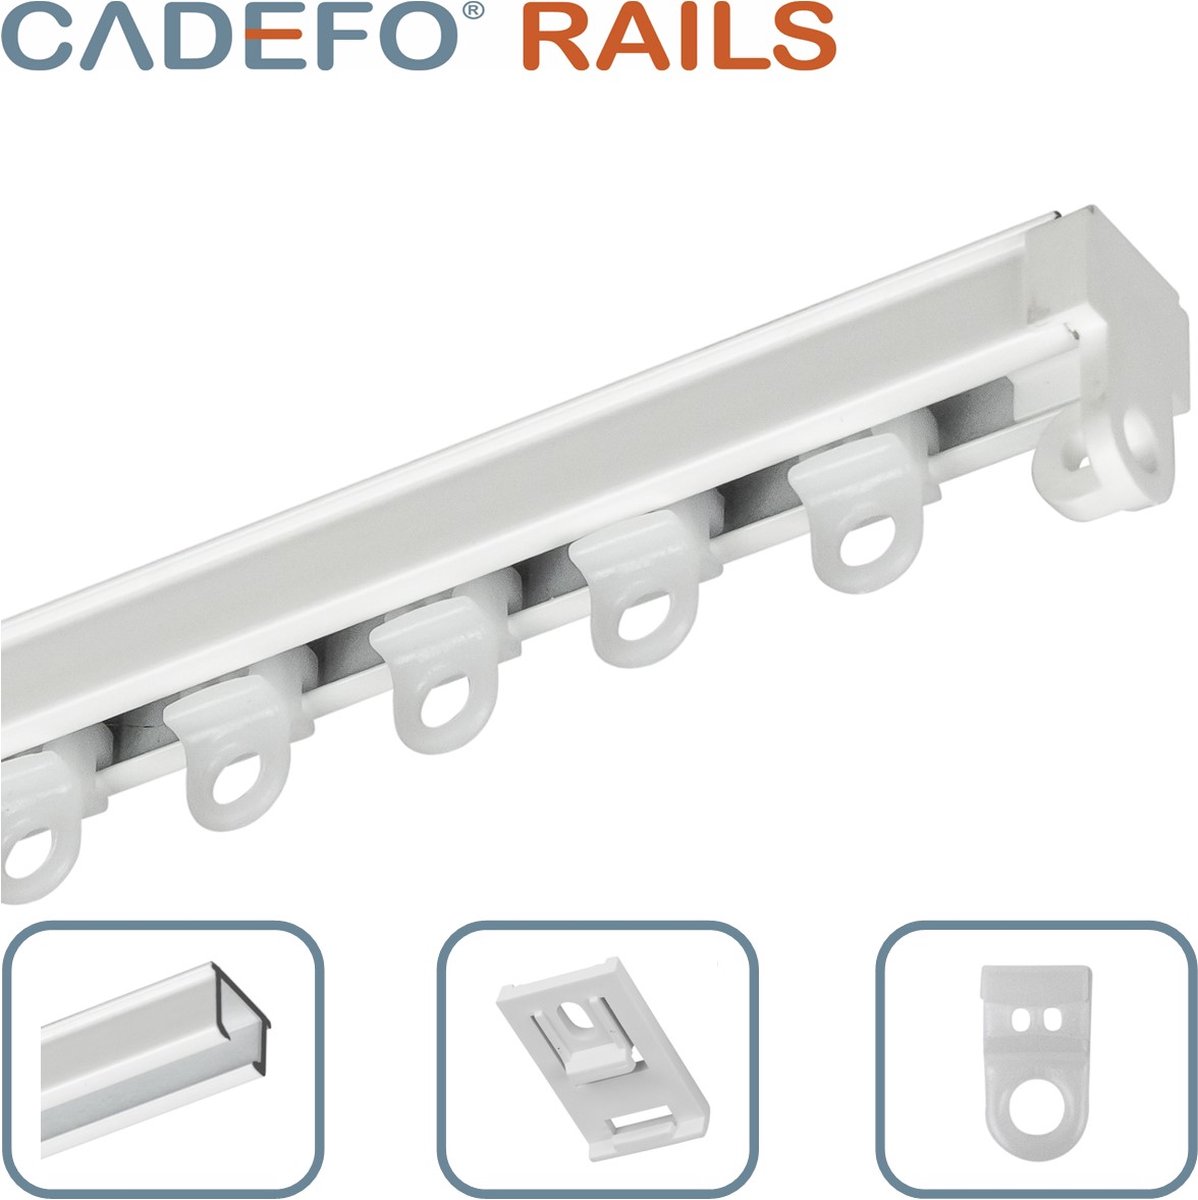 CADEFO RAILS (101 - 150 cm) Gordijnrails - Compleet op maat! - UIT 1 STUK - Leverbaar tot 6 meter - Plafondbevestiging - Lengte 112 cm